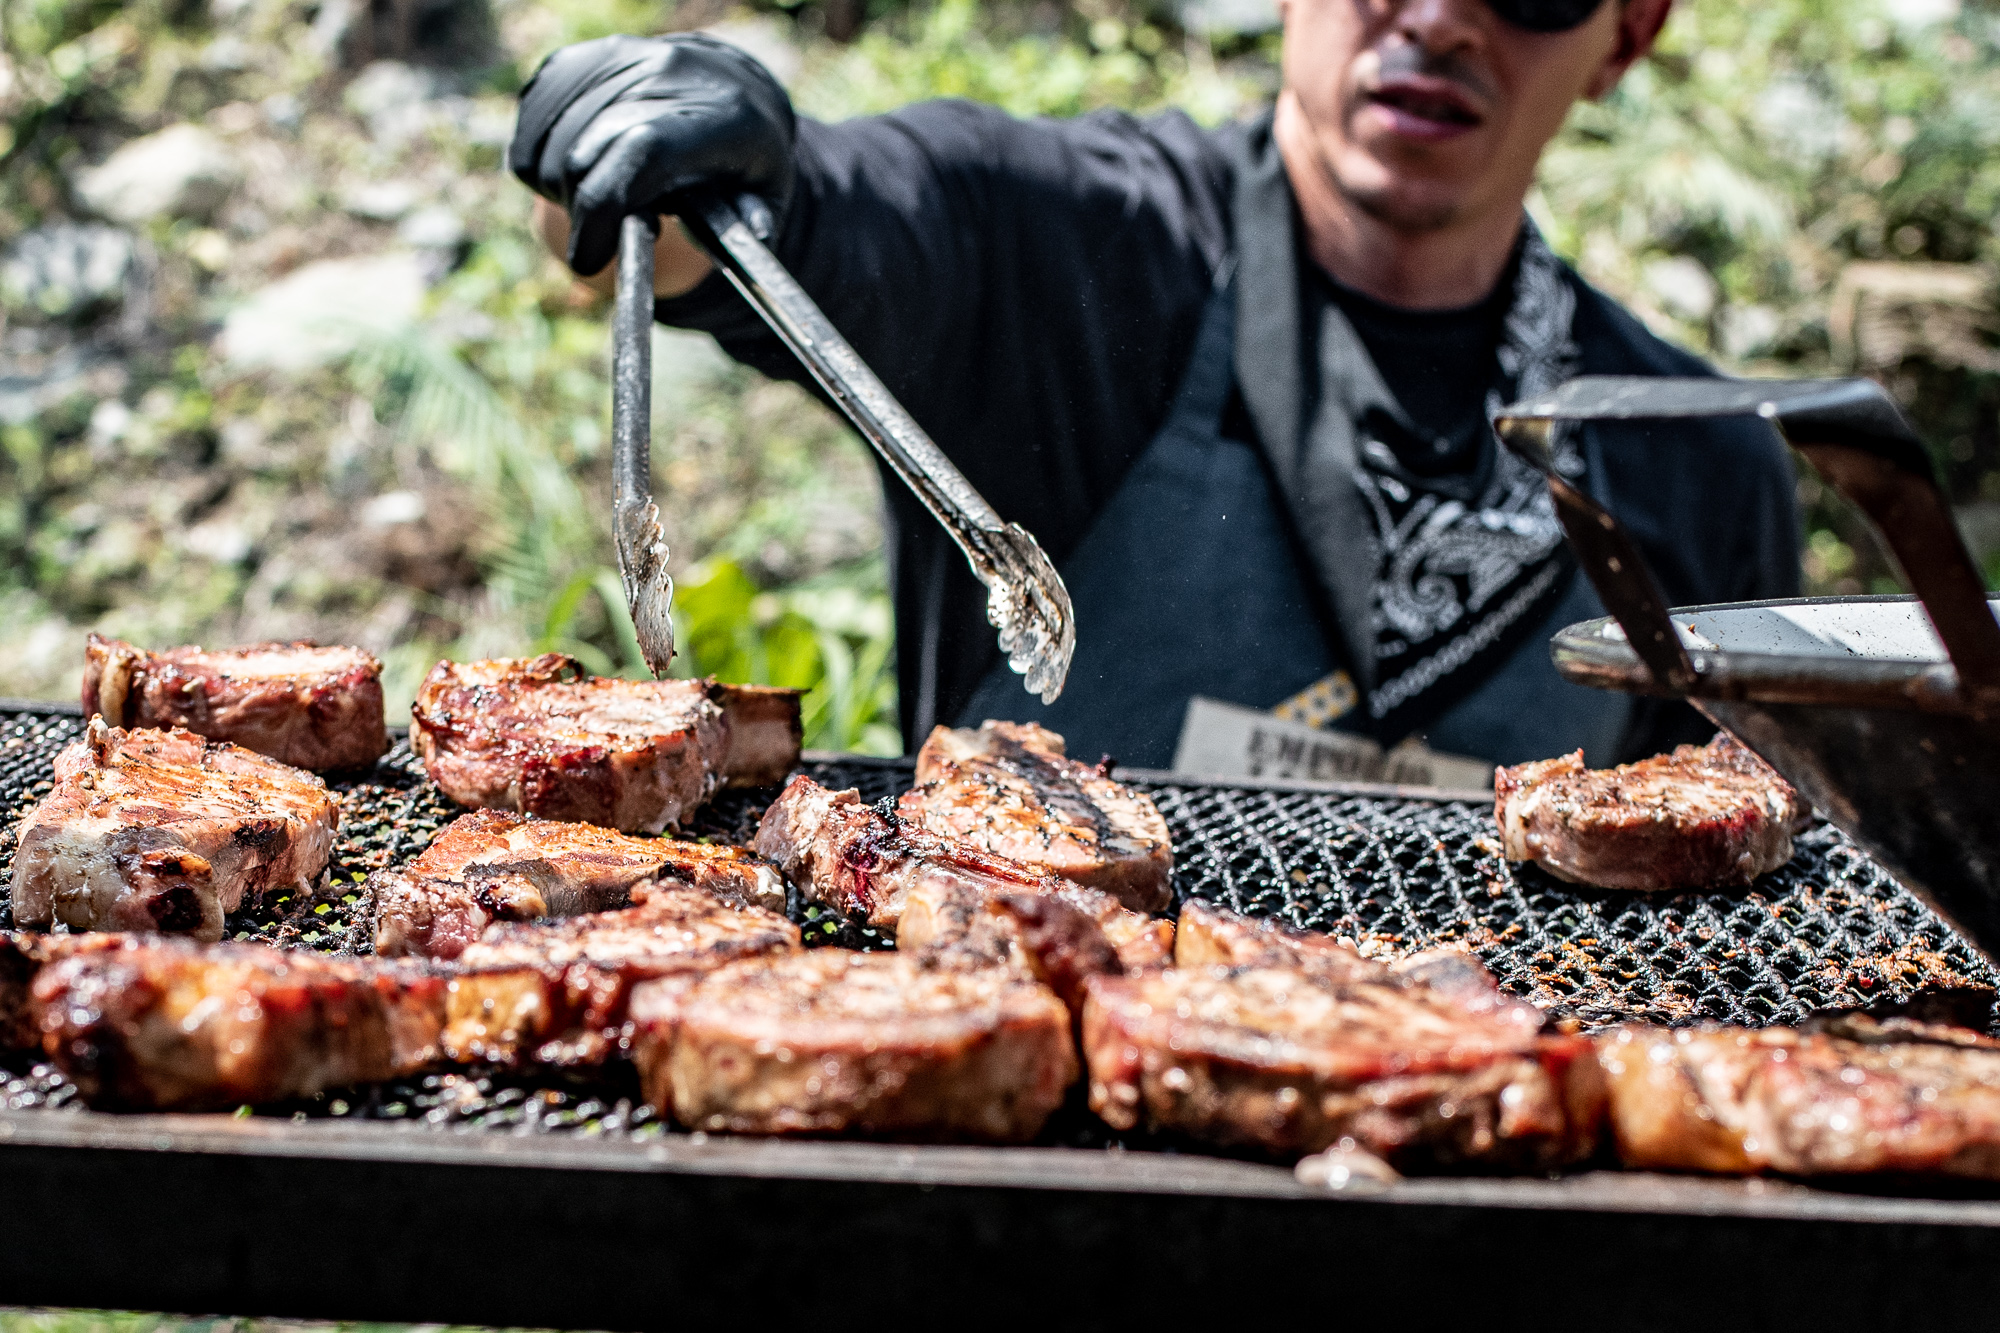 Com 8 toneladas de carne, o Carnivoria vai reunir o melhor do churrasco internacional na Capital em dois fins de semana. Entrada é gratuita e expectativa é receber 35 mil pessoas nos seis dias de evento